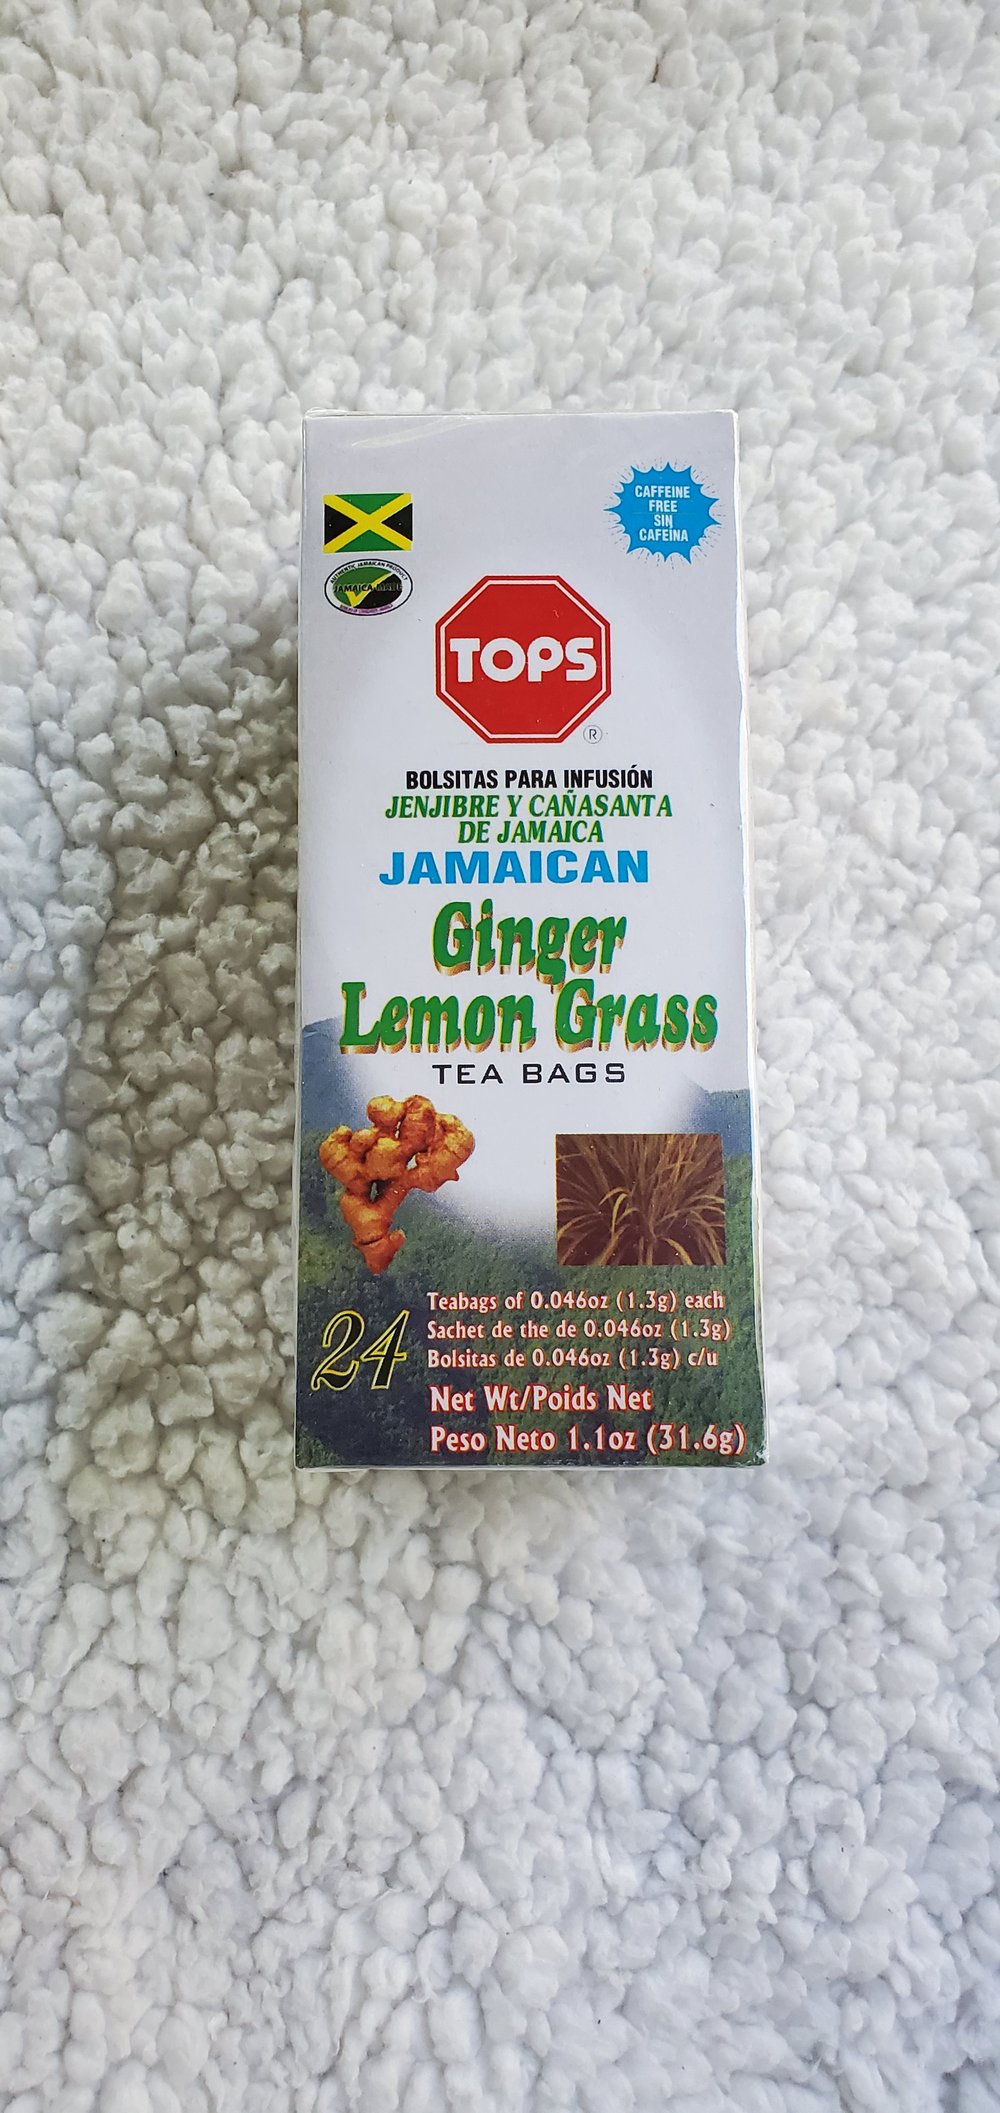 Lemon grass and ginger (Fever Grass)